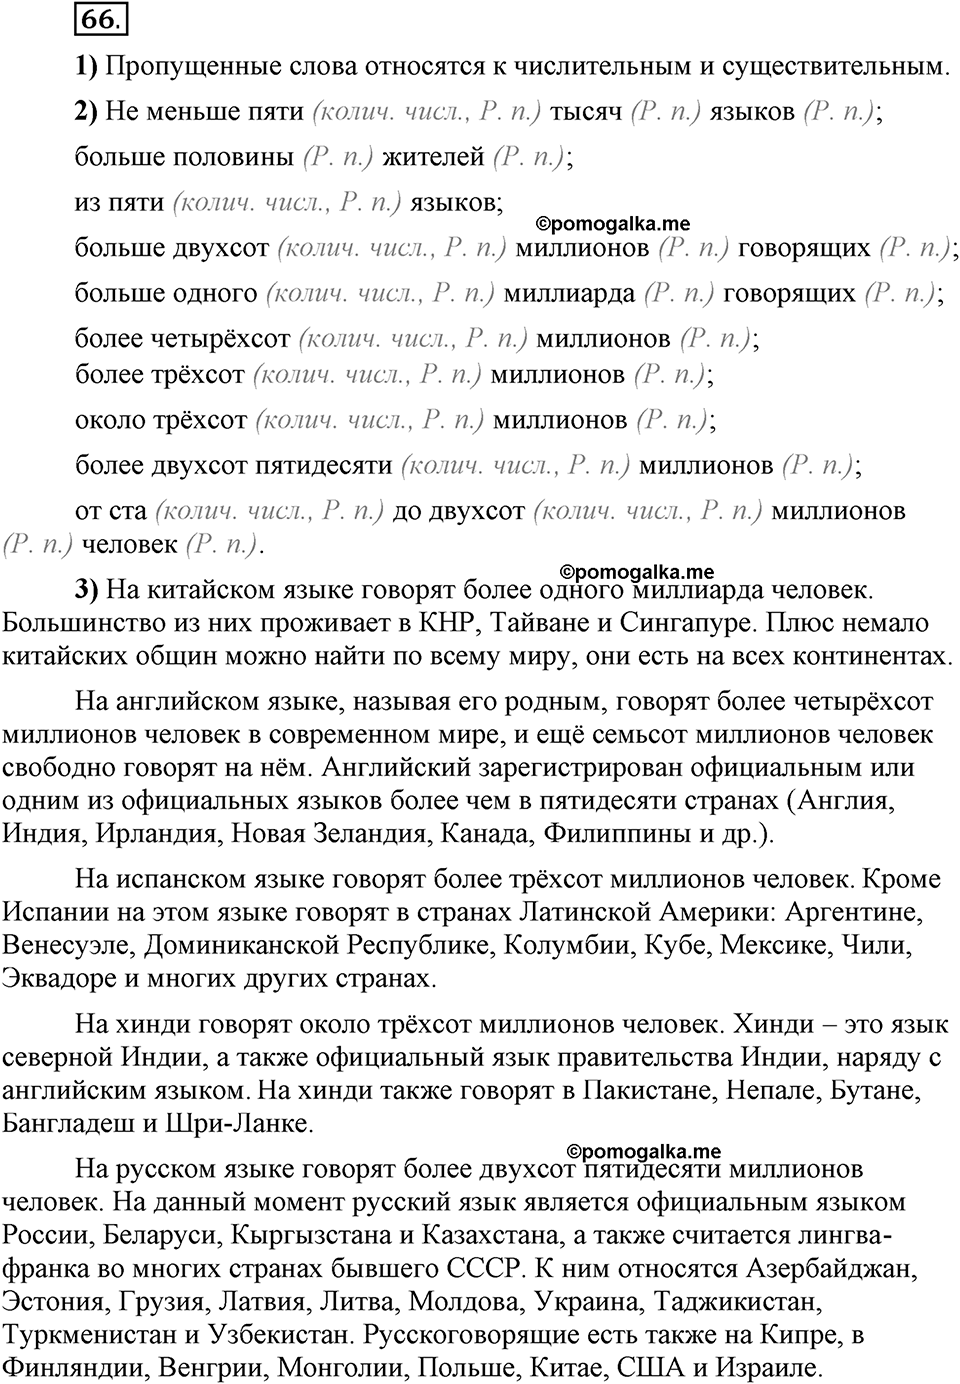 Глава 7. Упражнение №66 русский язык 6 класс Шмелёв